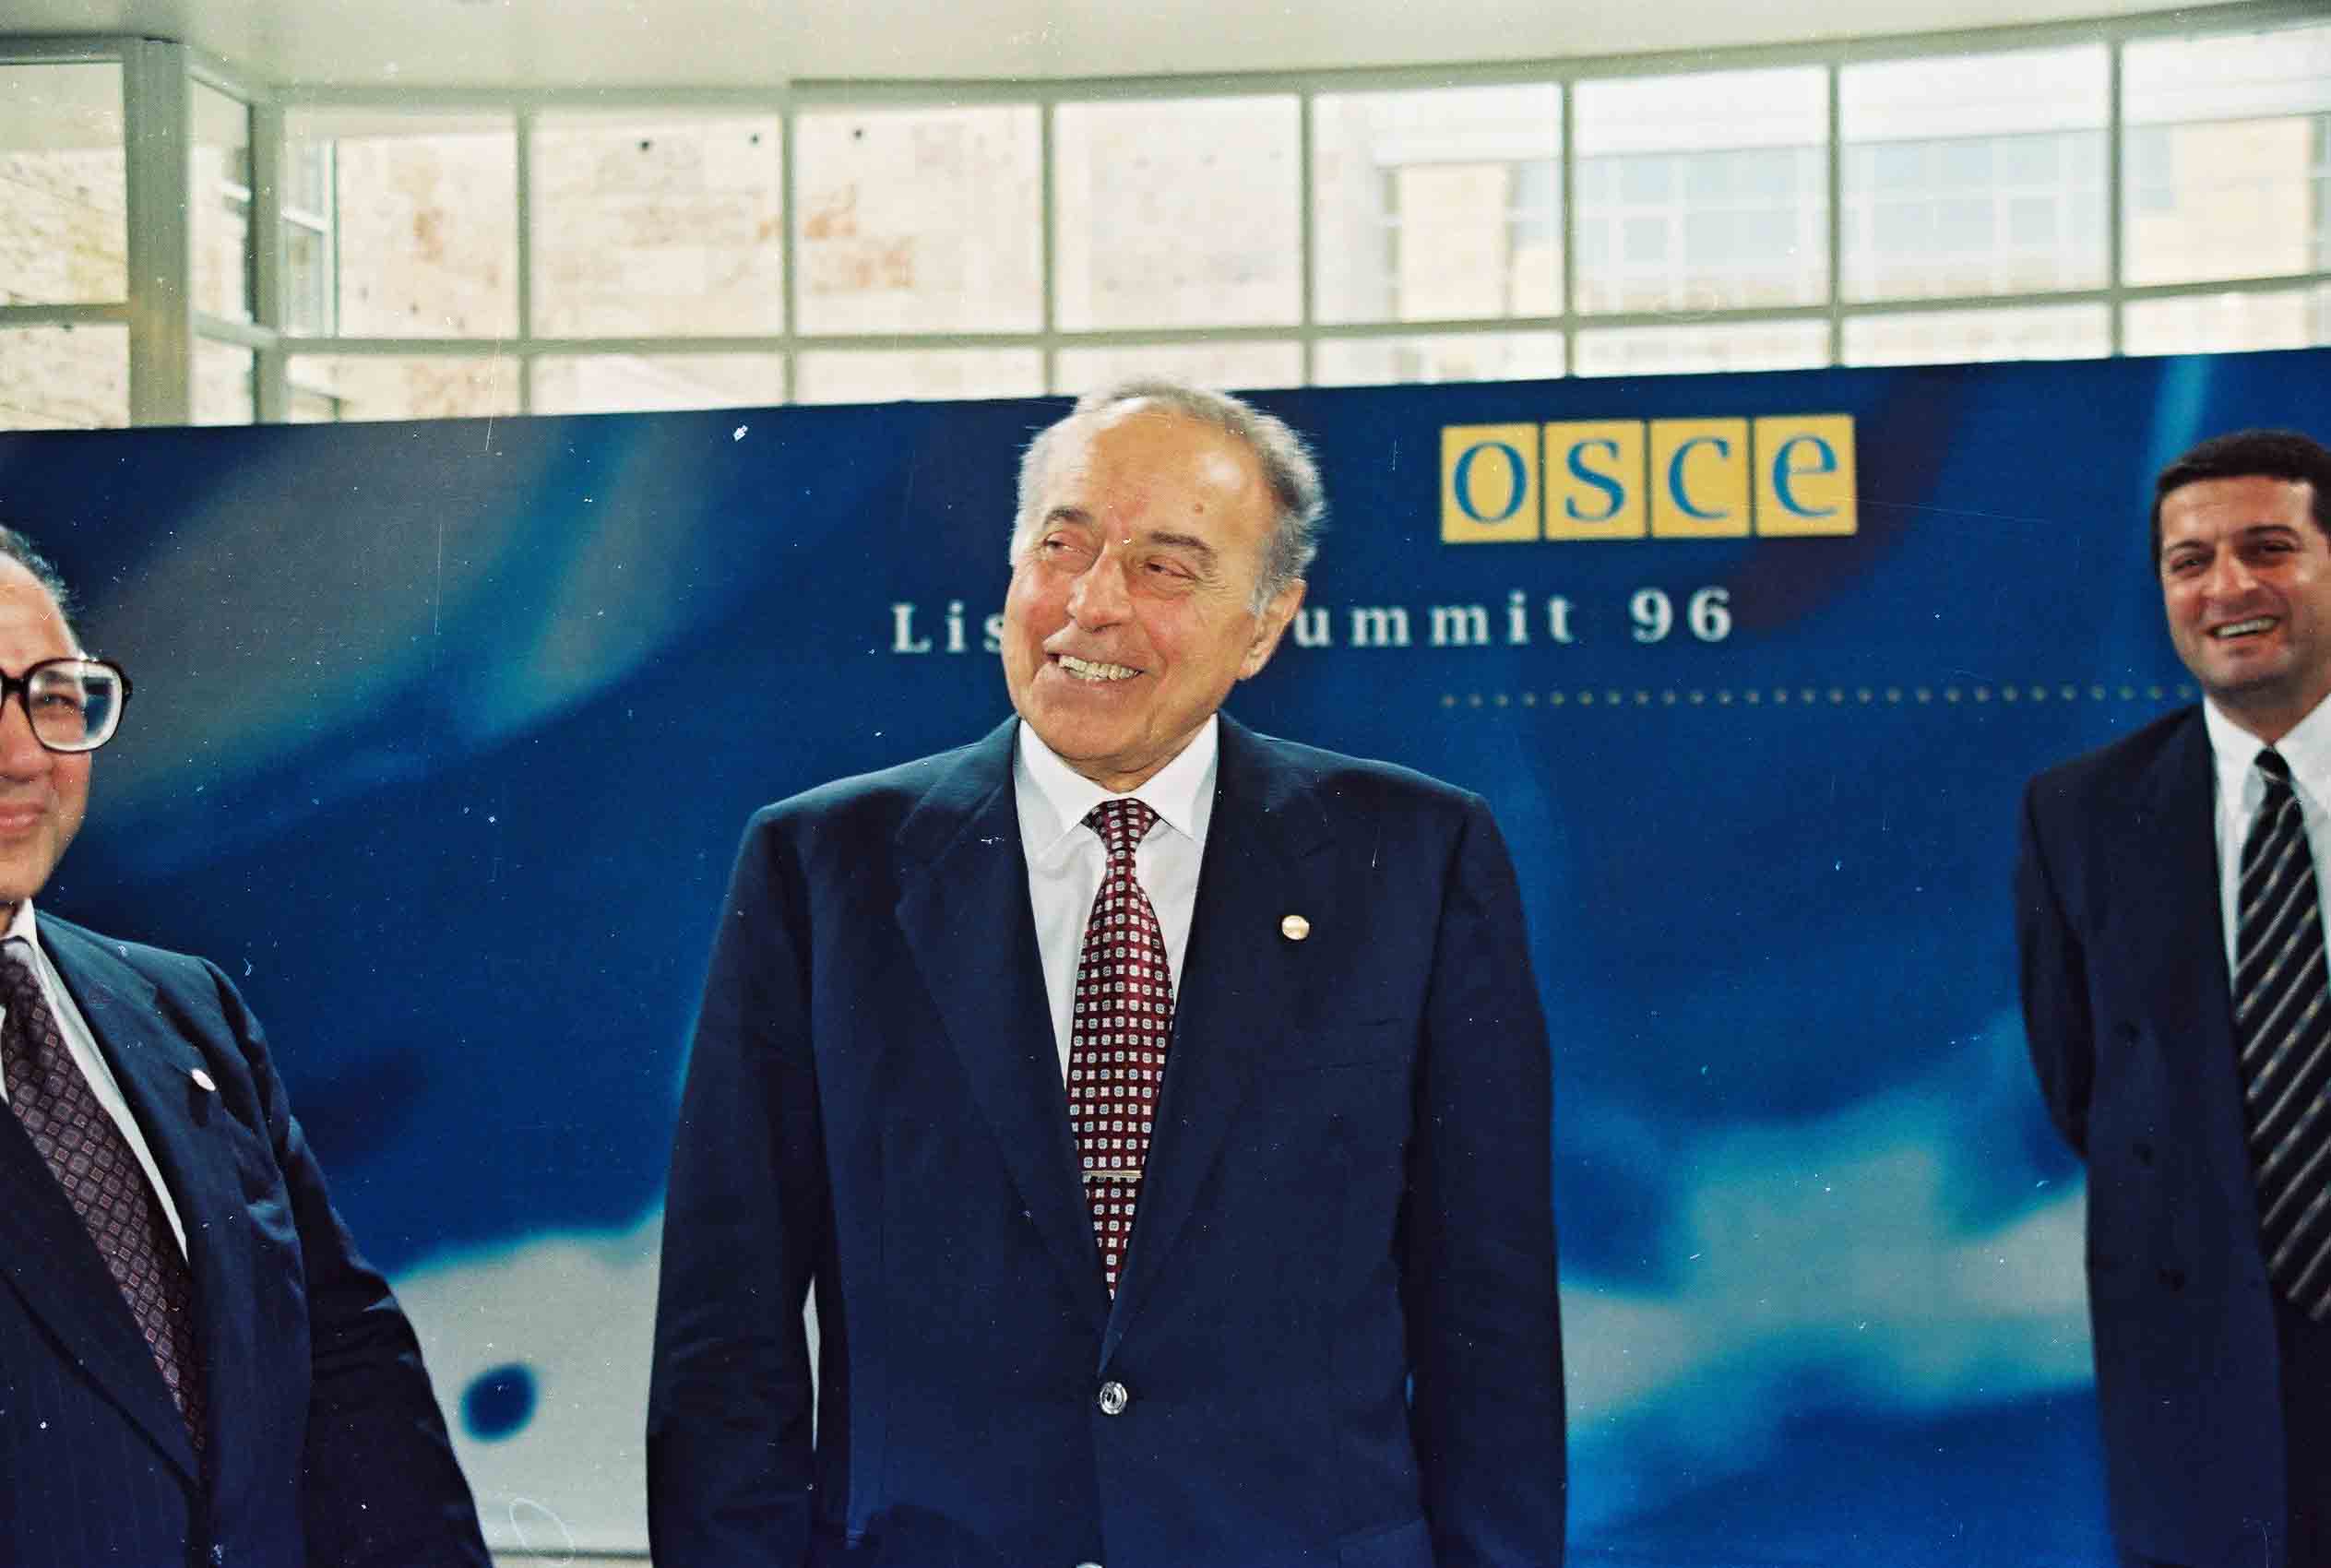 Речь Президента ‎Азербайджанской ‎Республики Гейдара ‎Алиева на заключительном ‎заседании Лиссабонского ‎саммита ОБСЕ - 3 декабря ‎‎1996 года‎